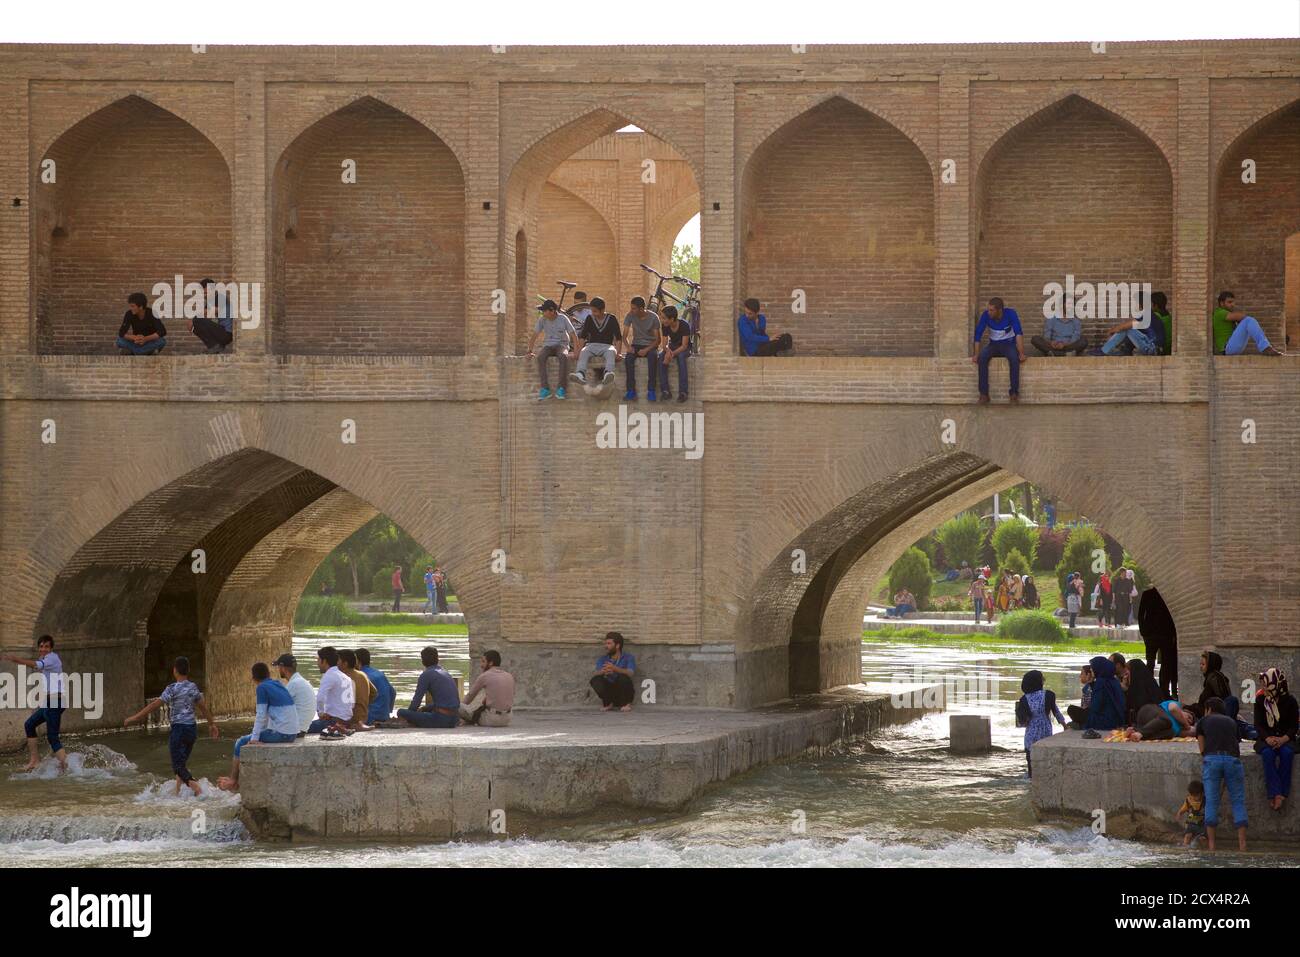 Le pont Pol au-dessus de la rivière Zayandeh, Isfahan, Iran central. Également connu sous le nom de All?hverdi Khan Bridge Banque D'Images